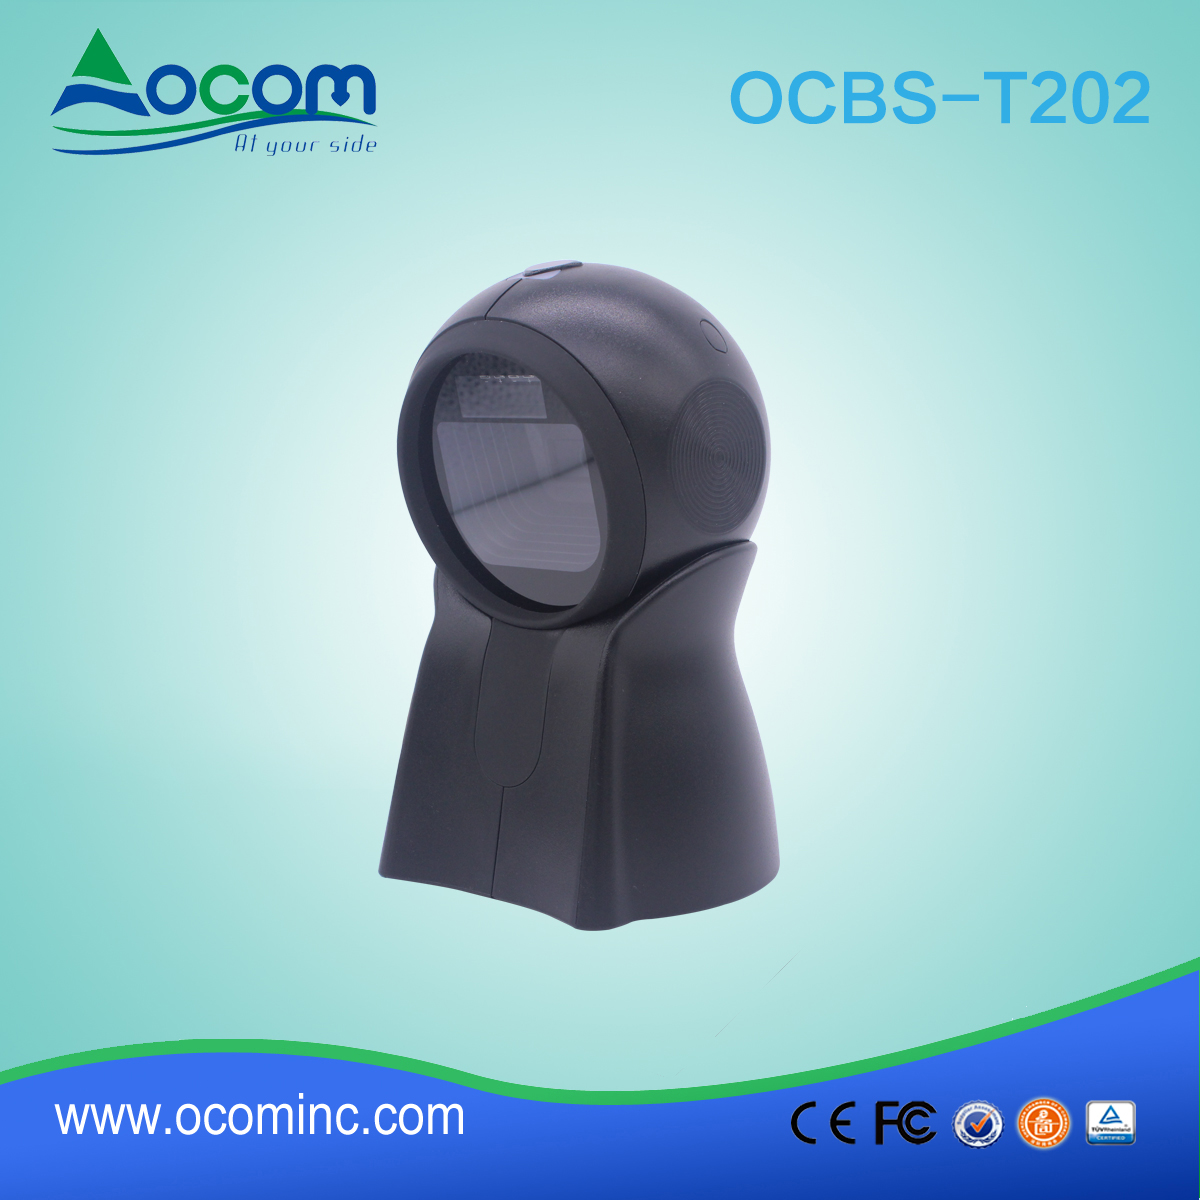 OCBS-T202: alta velocità pos scanner per codici a barre 2D per supermercato